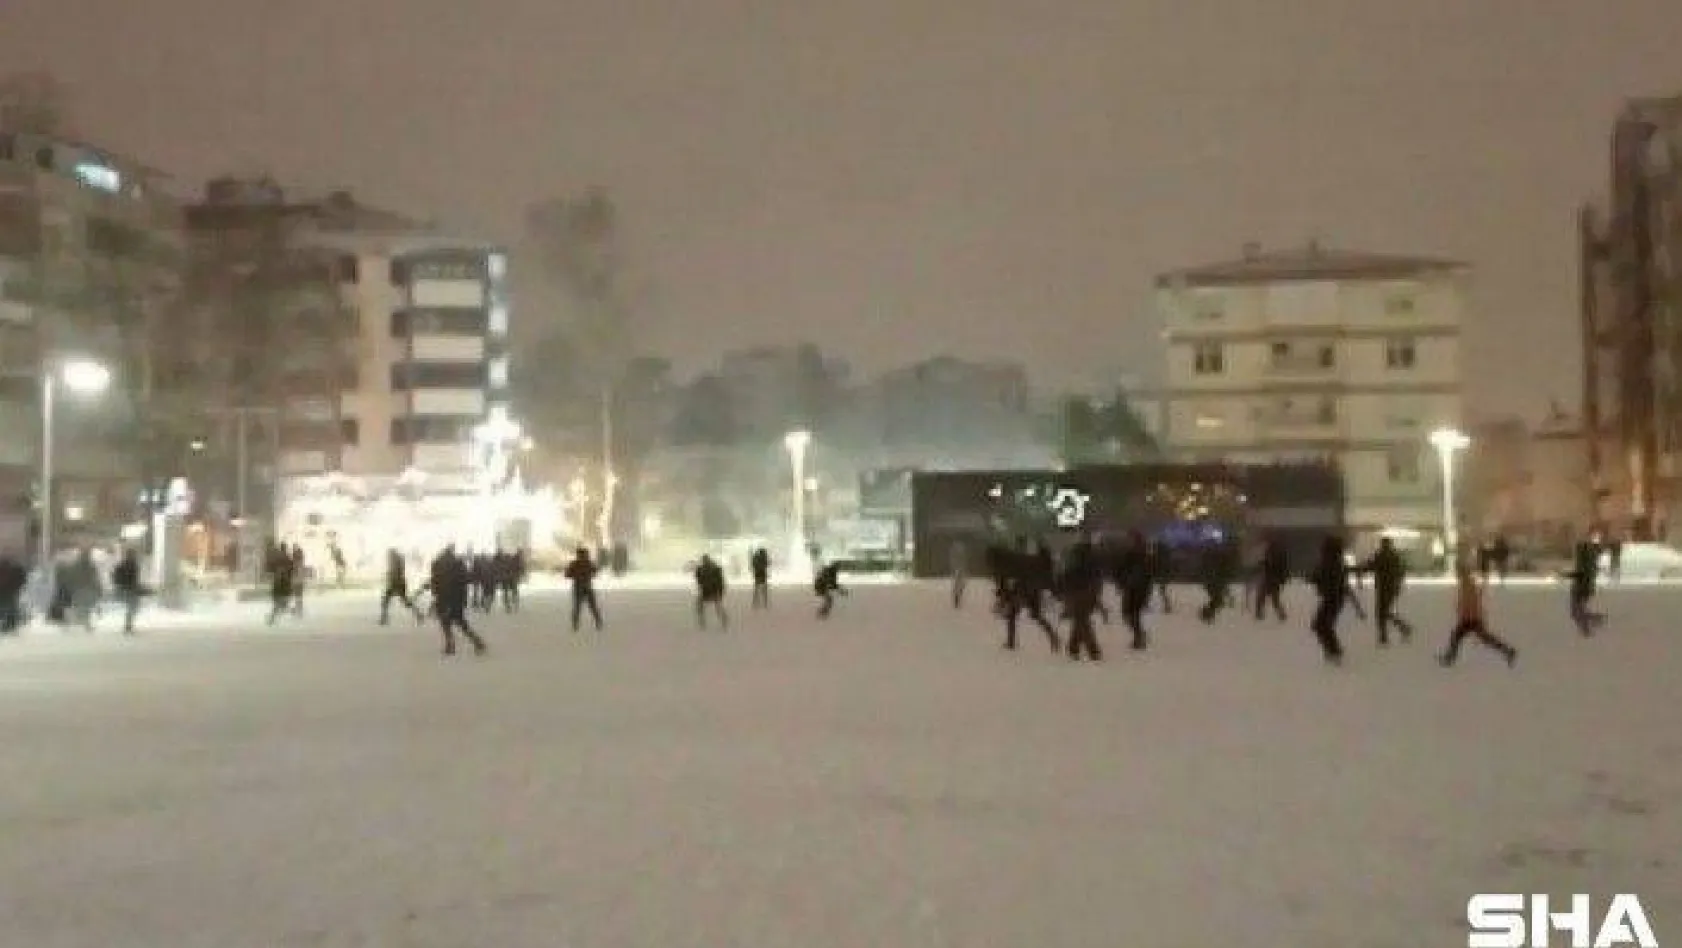 Yaklaşık 200 kişi aynı anda kar topu oynadı